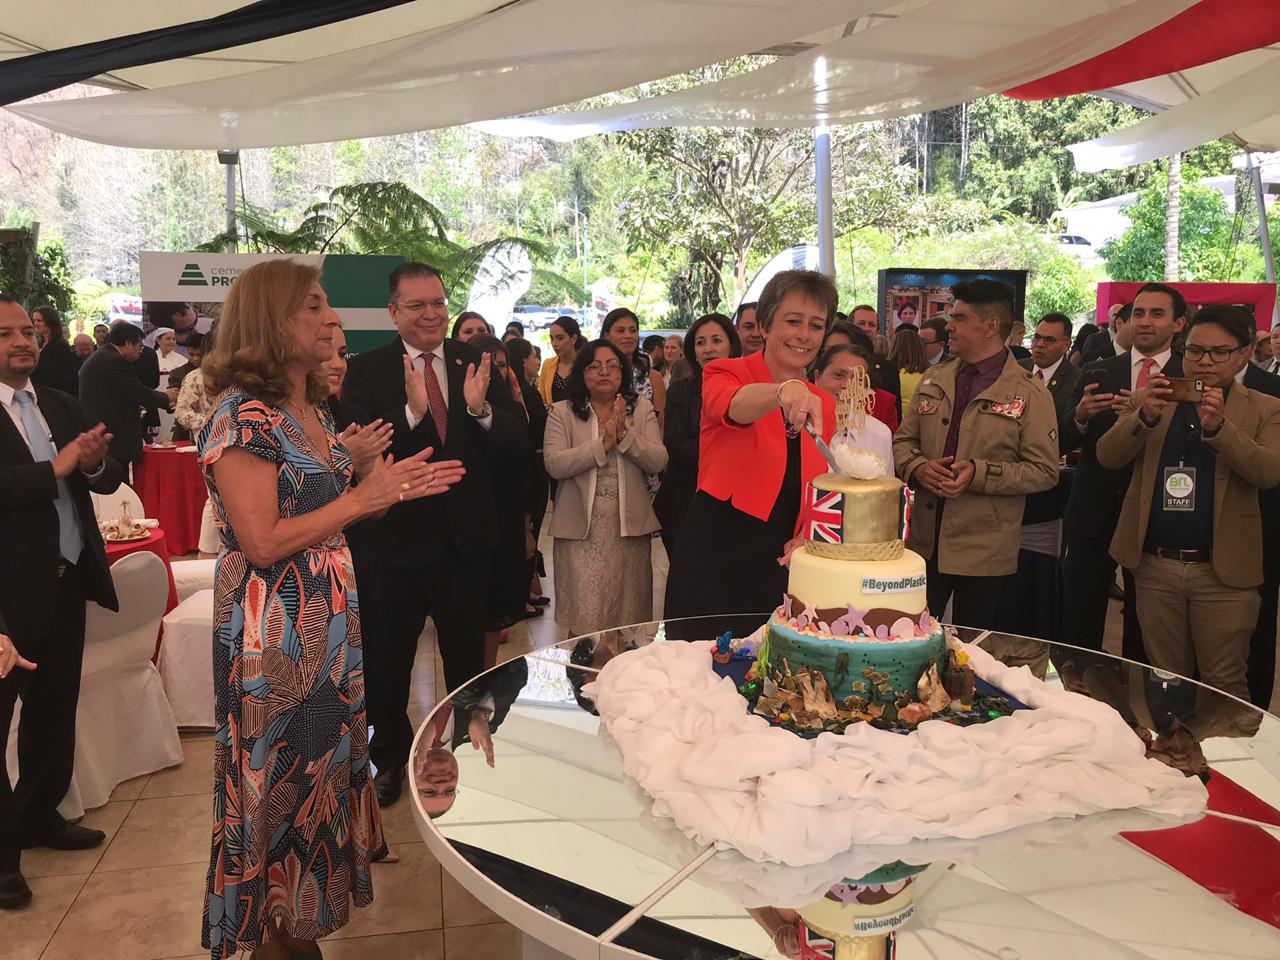 Carolyn Davidson, Embajadora Británica, al partir el pastel en honor de la Reina Elizabeth Segunda.